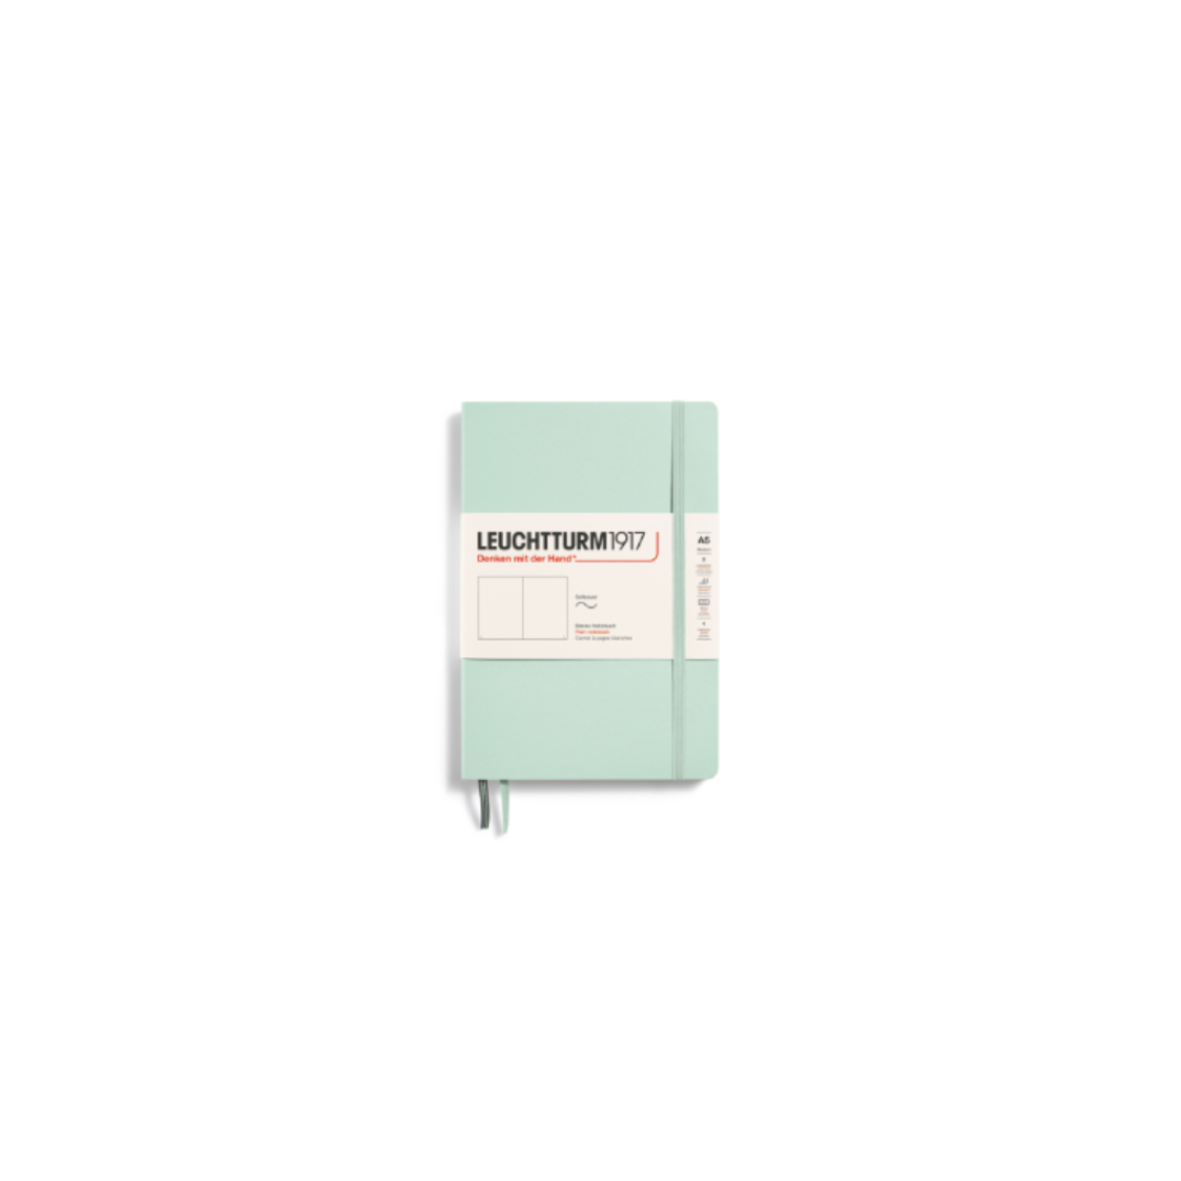 Notebook Softcover Medium A5 Mint Green, Plain * Leuchtturm1917